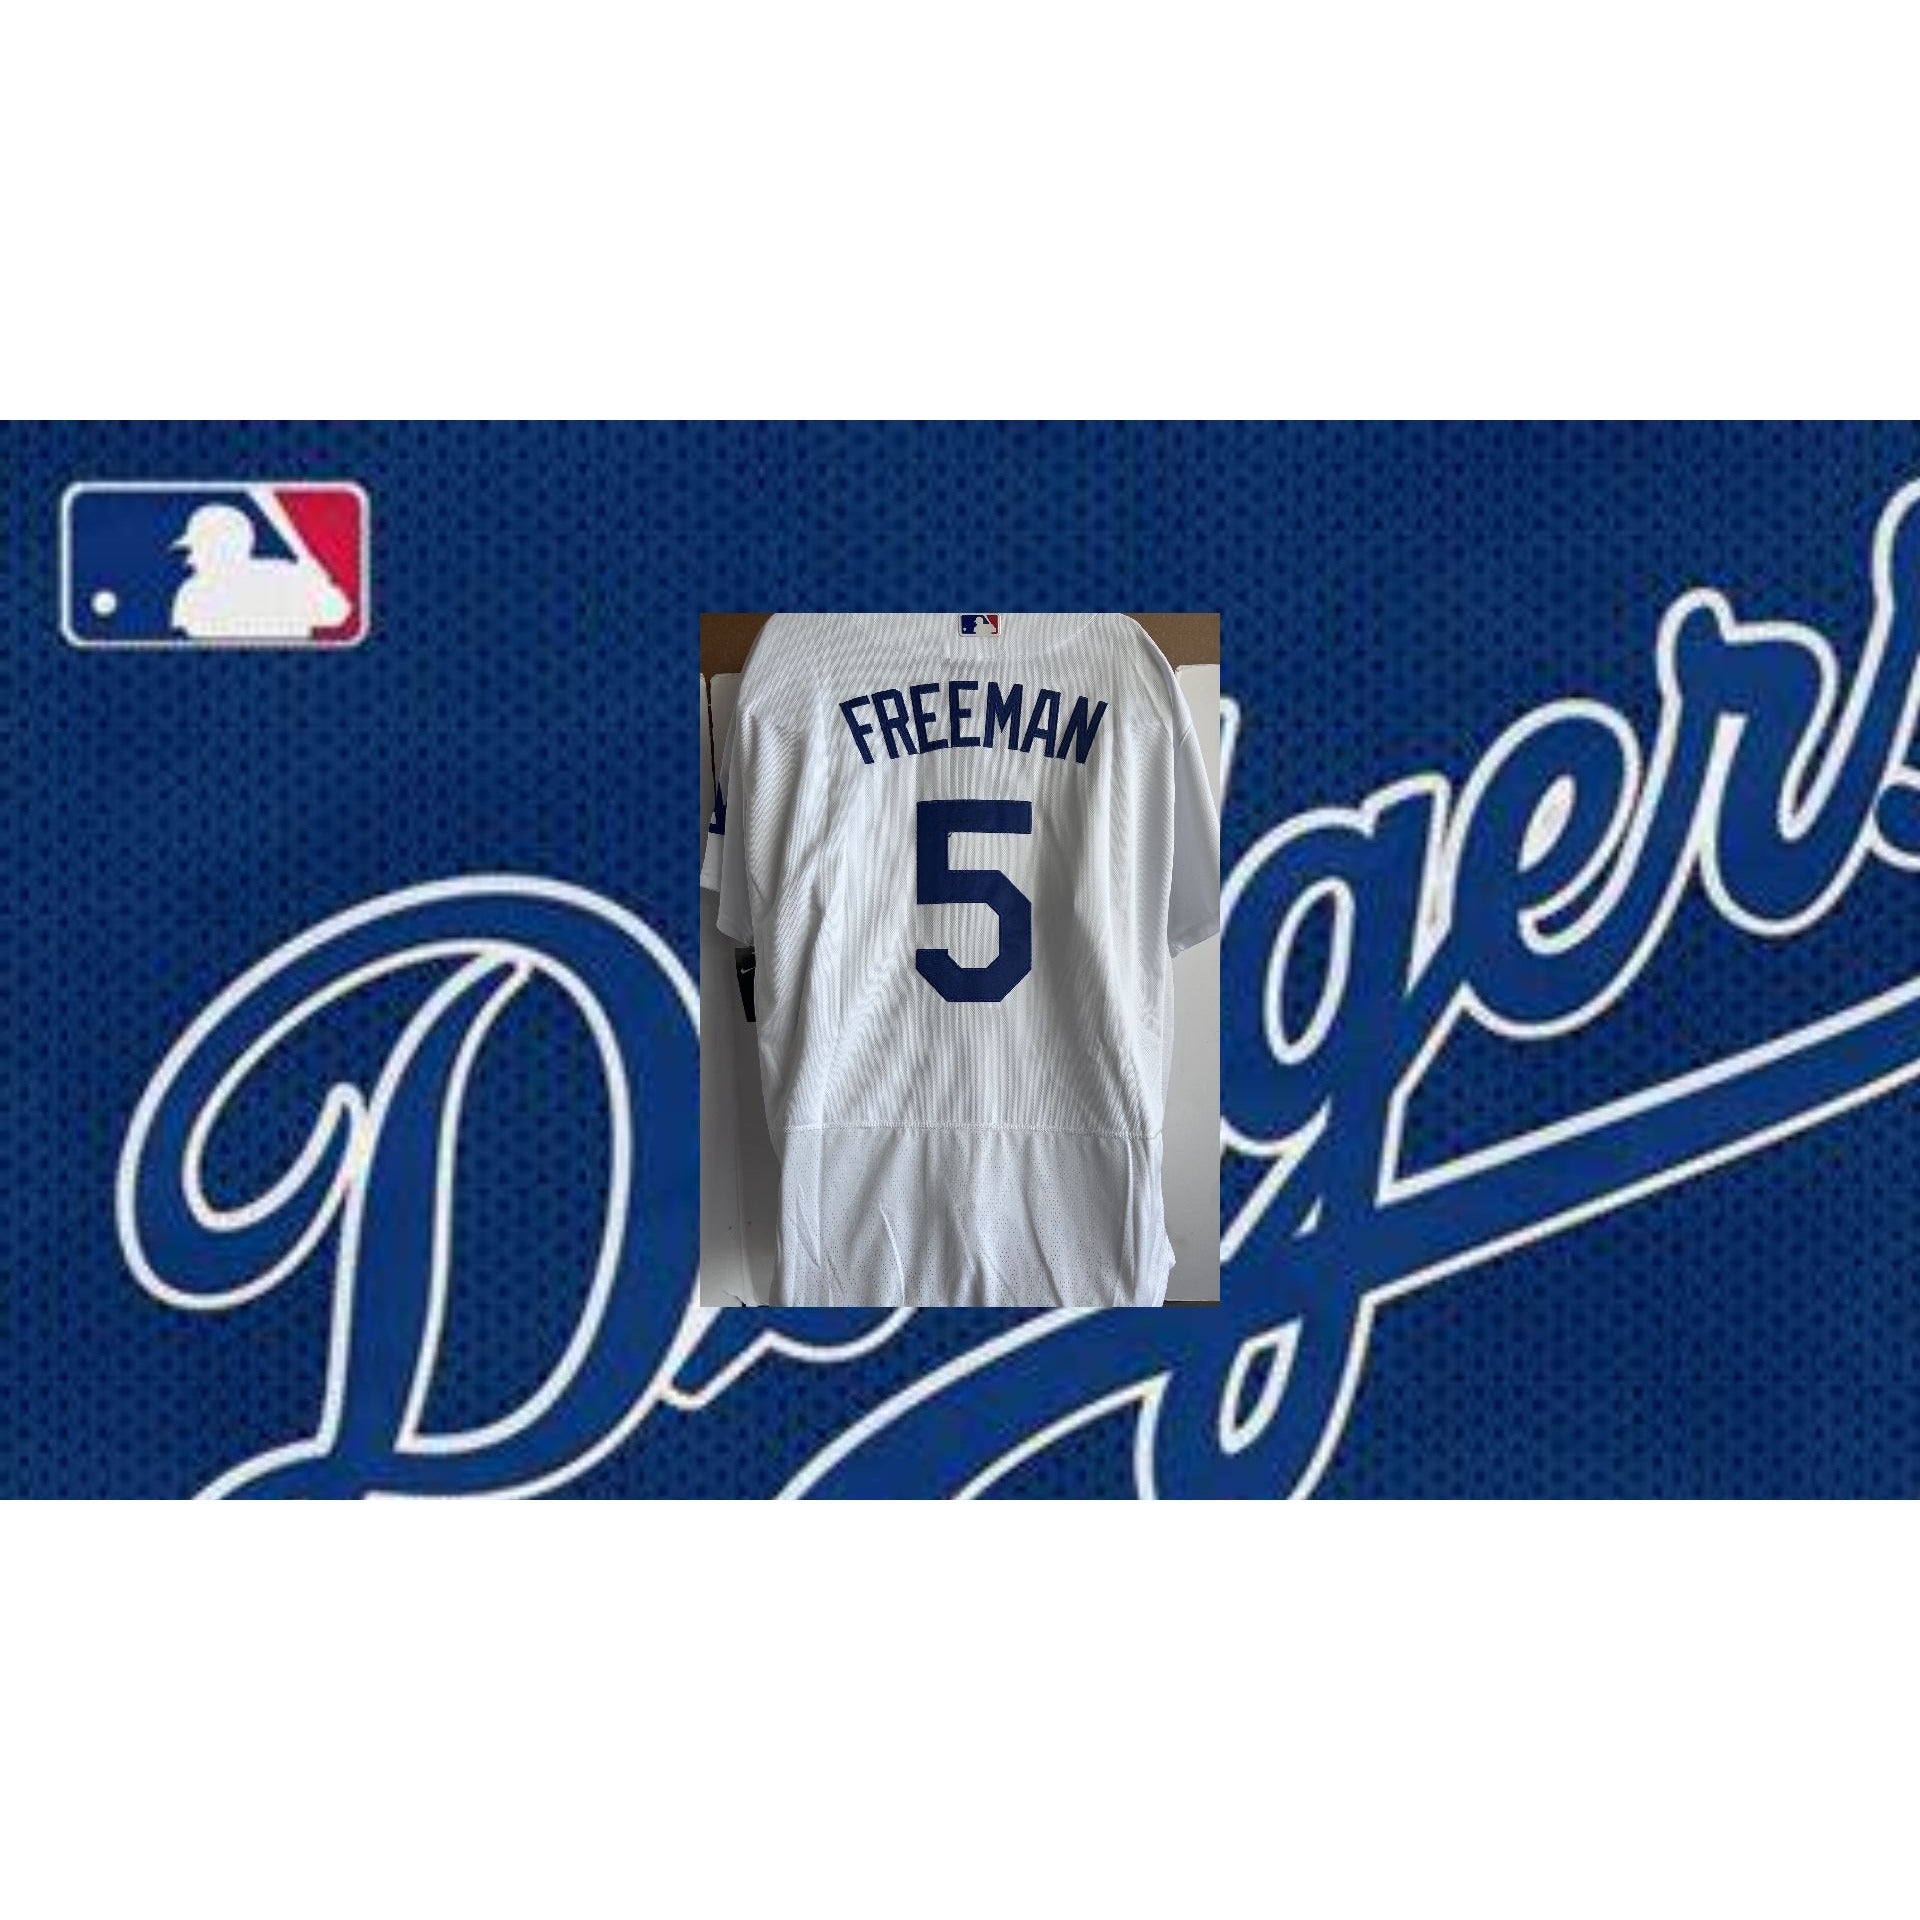 La Dodgers Freeman Blue Jersey